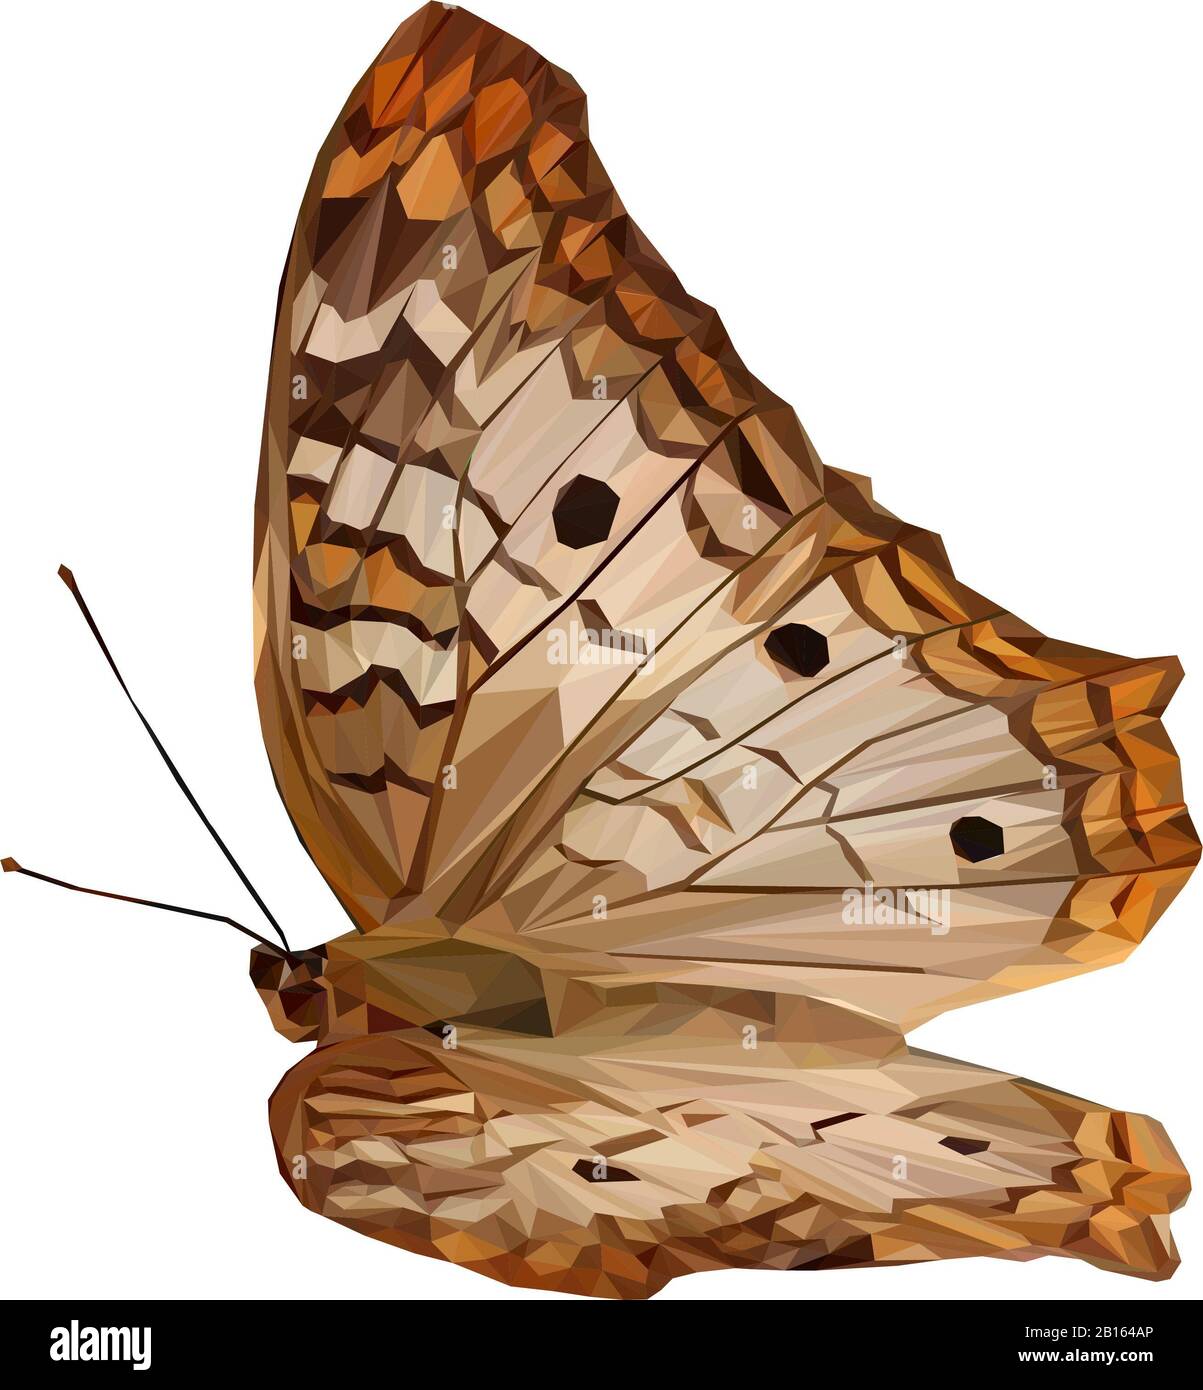 Ilustración de poli baja de una mariposa marrón Foto de stock